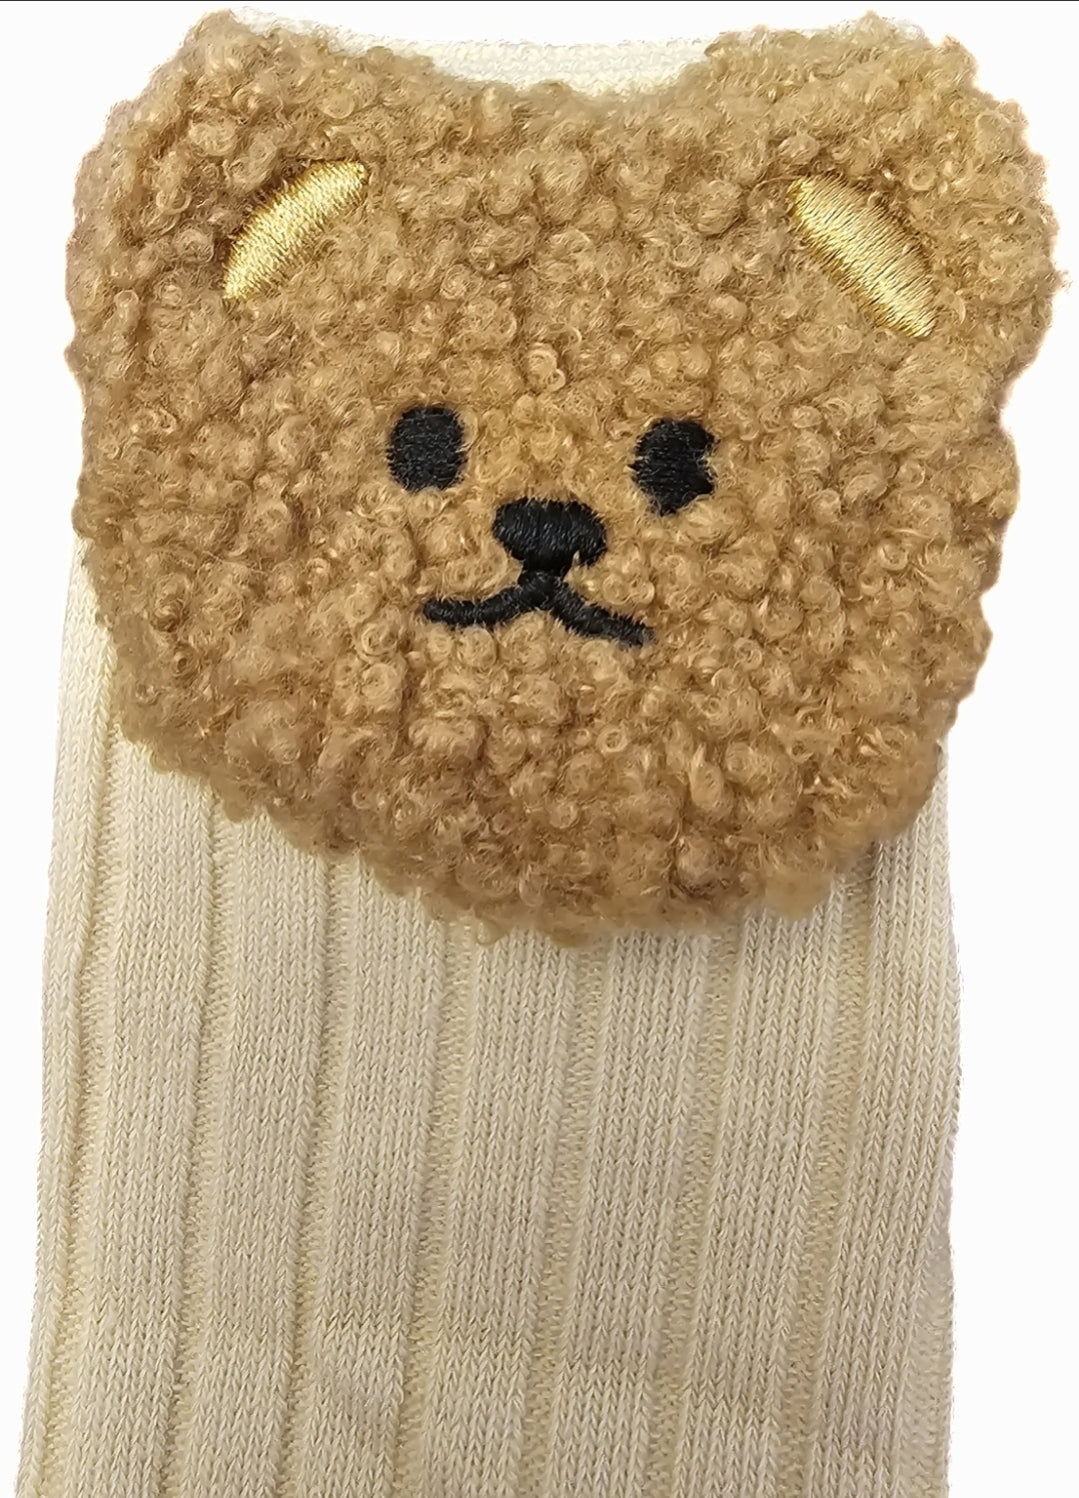 Teddy bear face socks (thinner bear)